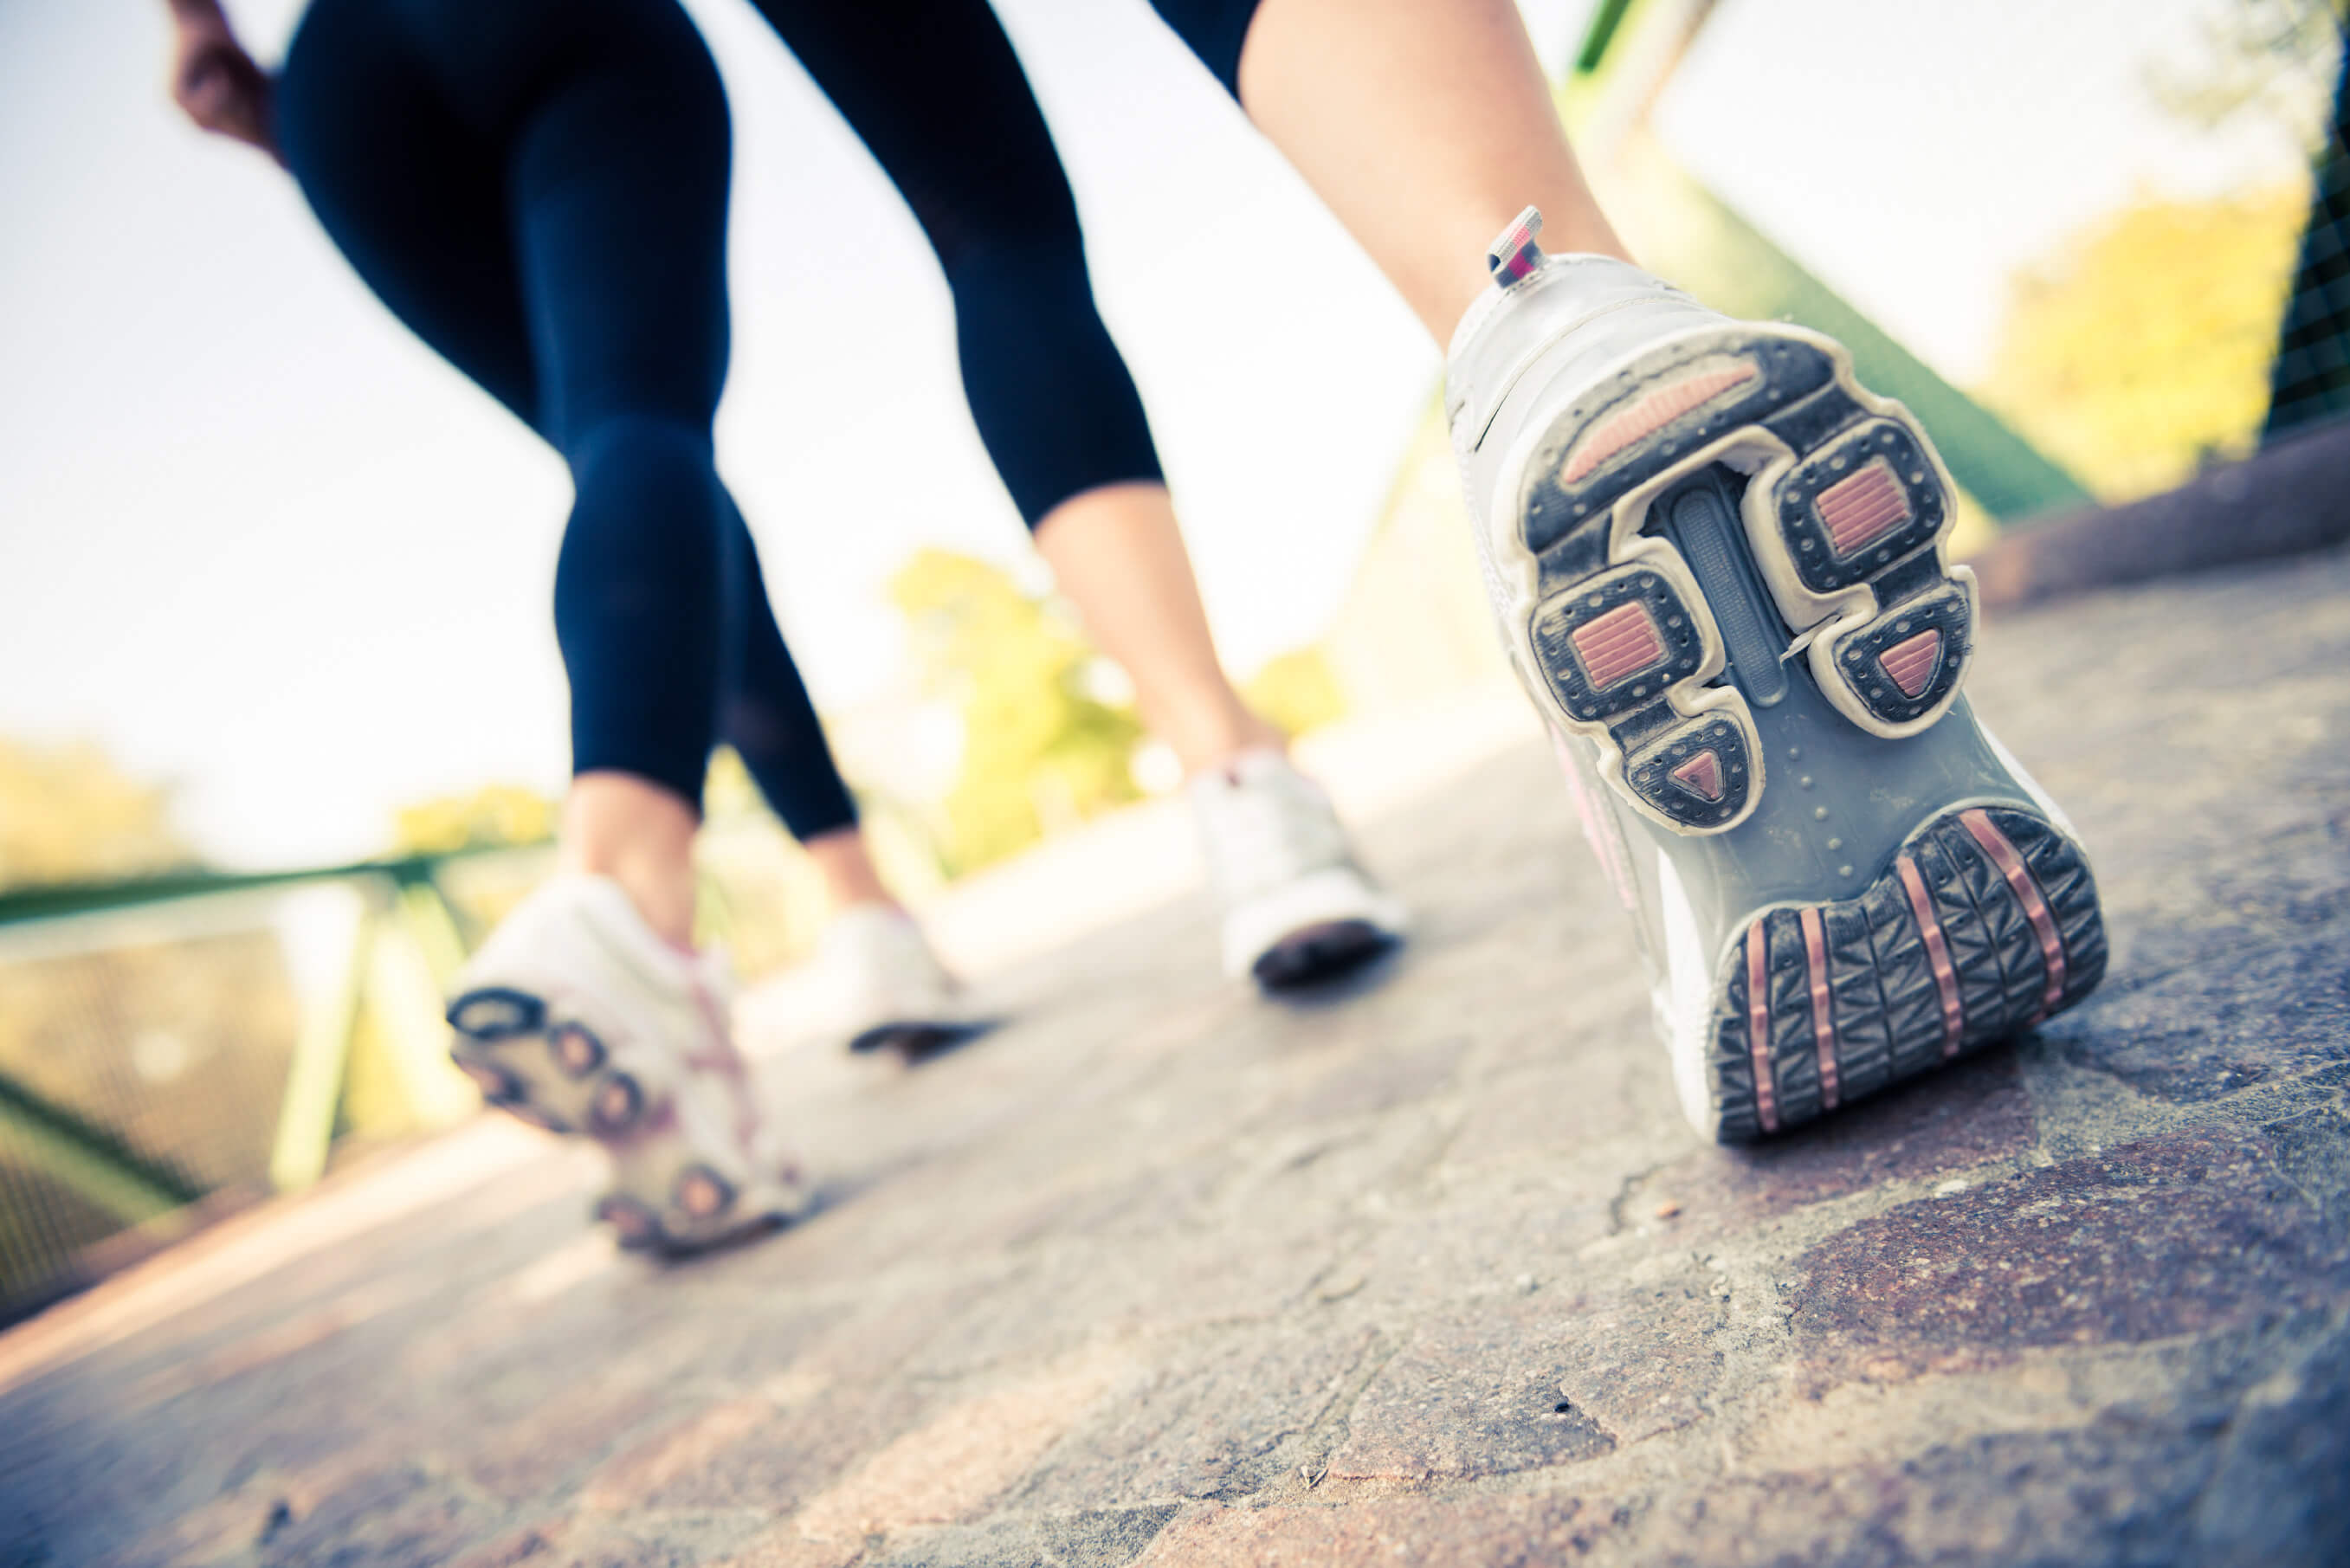 新研究证实每天走1万步是实现最佳健康效果的理想步数 步速更快效果更佳